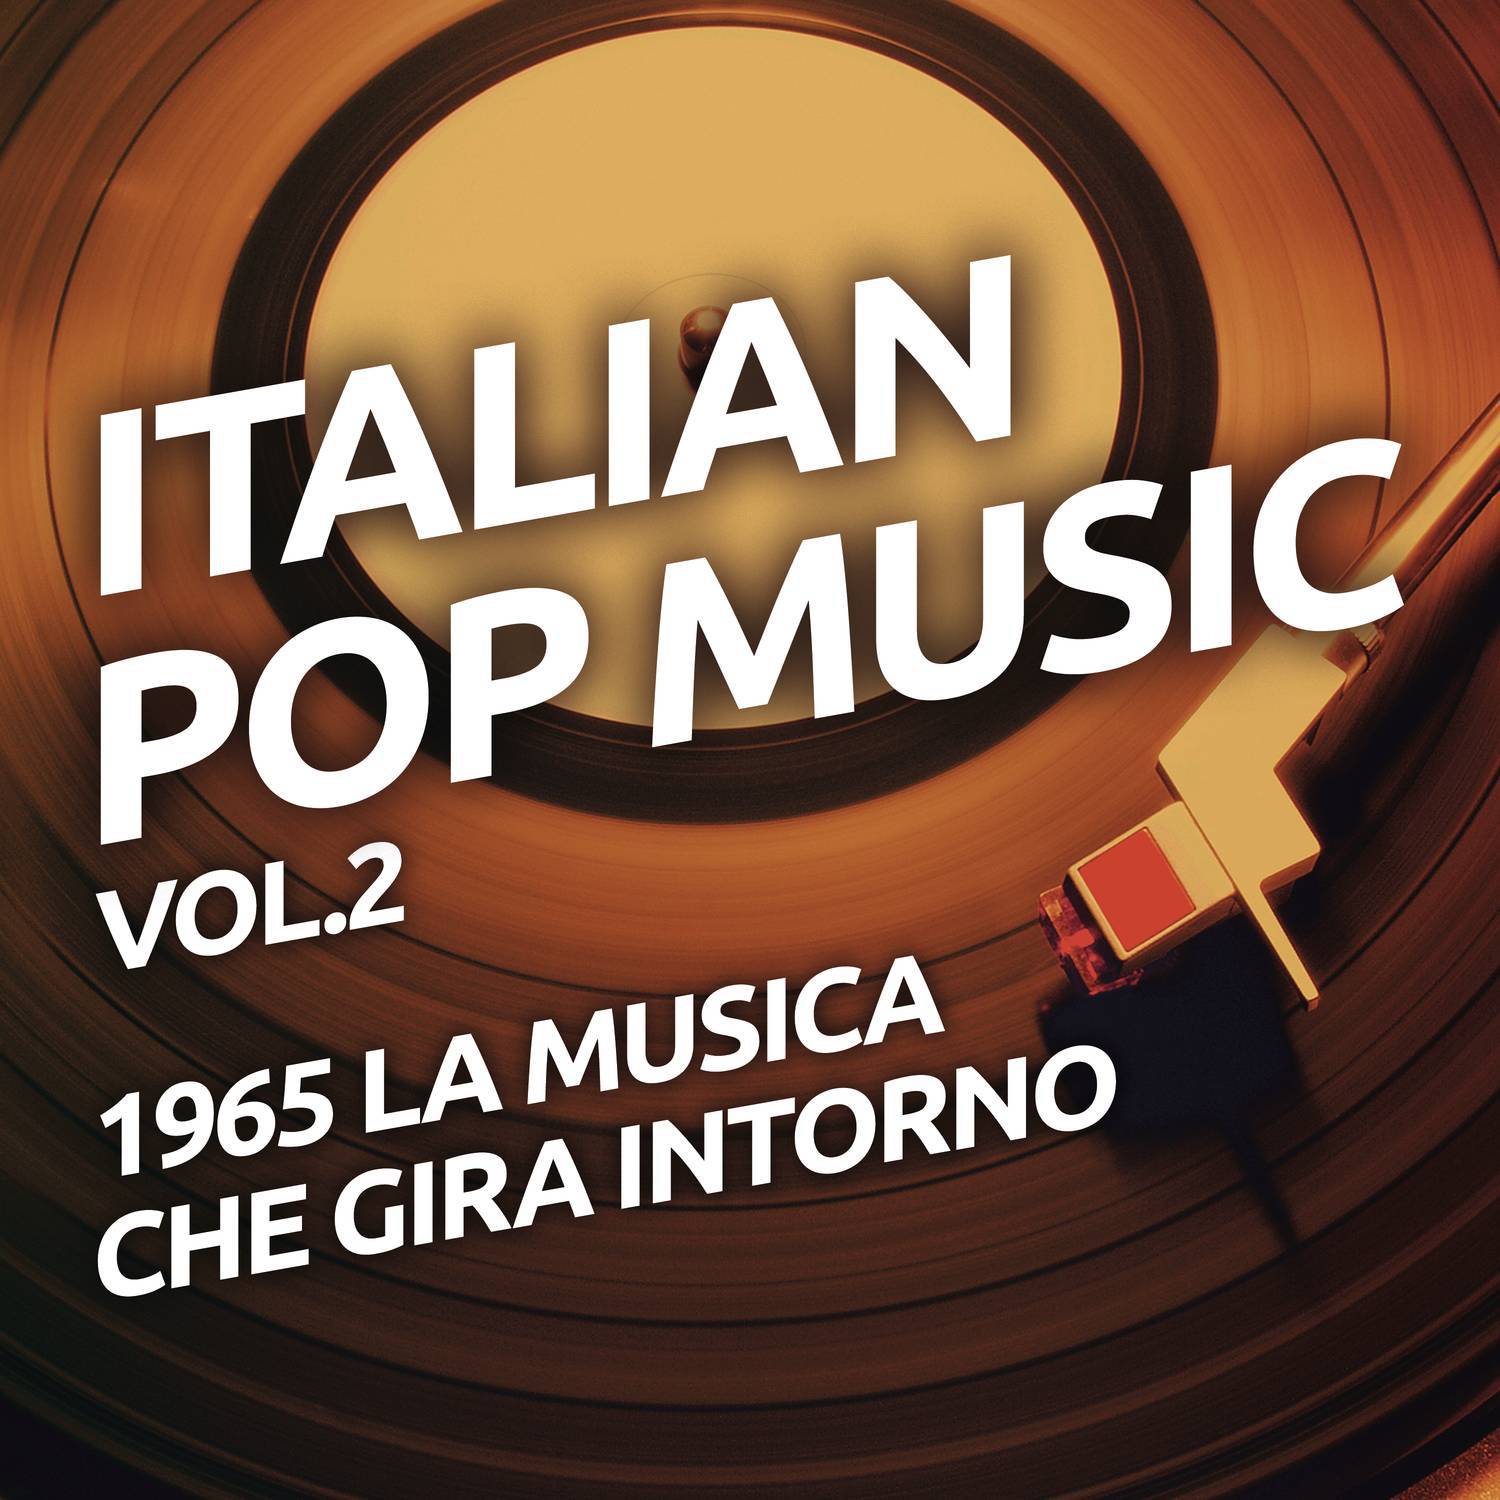 1965 La musica che gira intorno - Italian pop music vol. 2